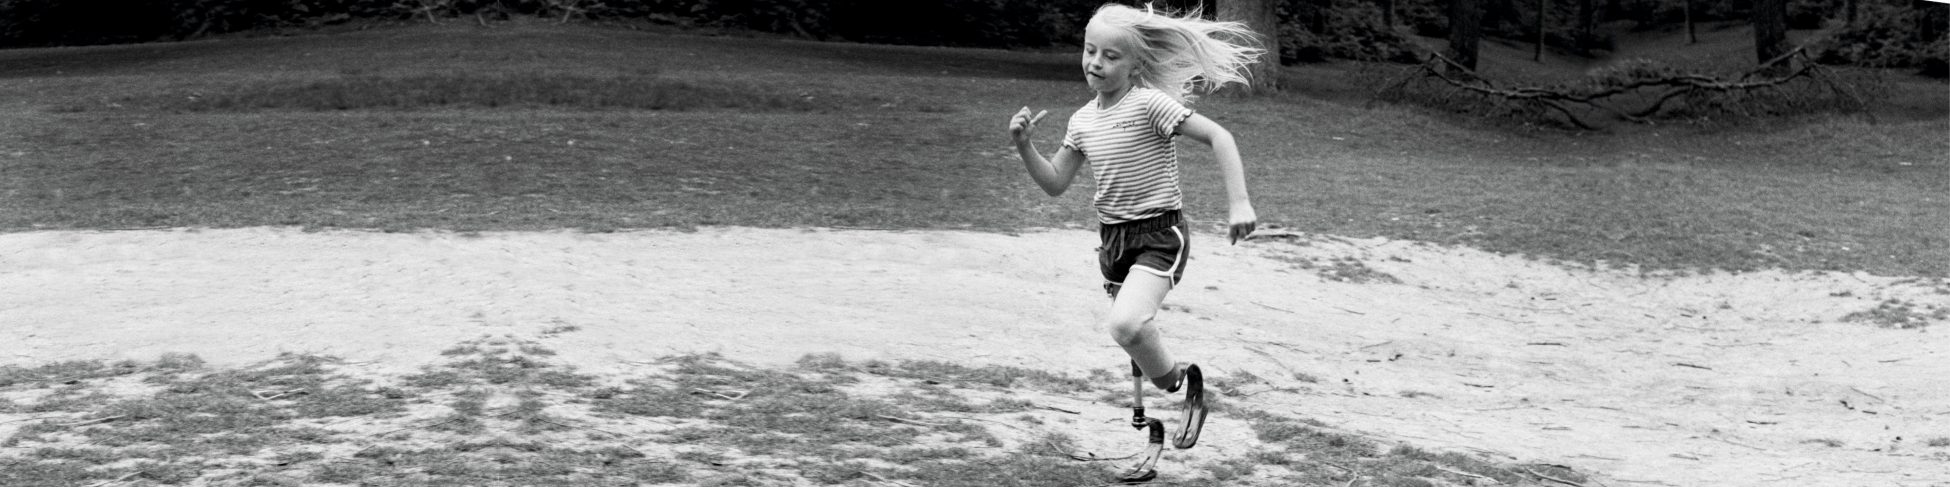 Kleines Mädchen mit einer Beinprothese läuft über einen Rasen. | VIACTIV Krankenkasse